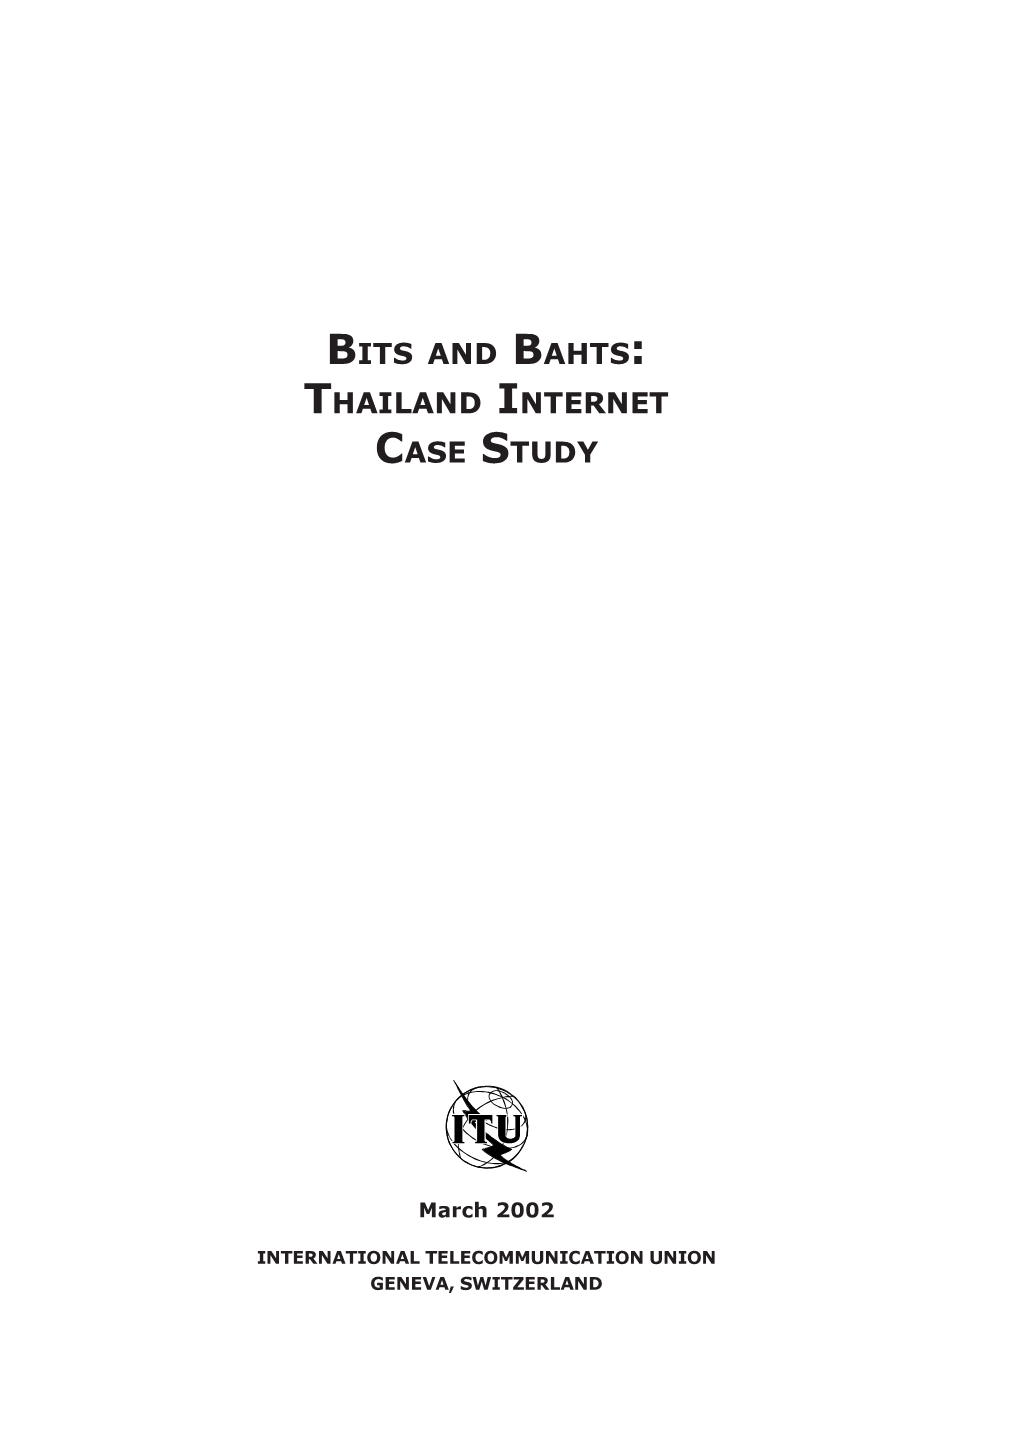 Thailand Internet Case Study